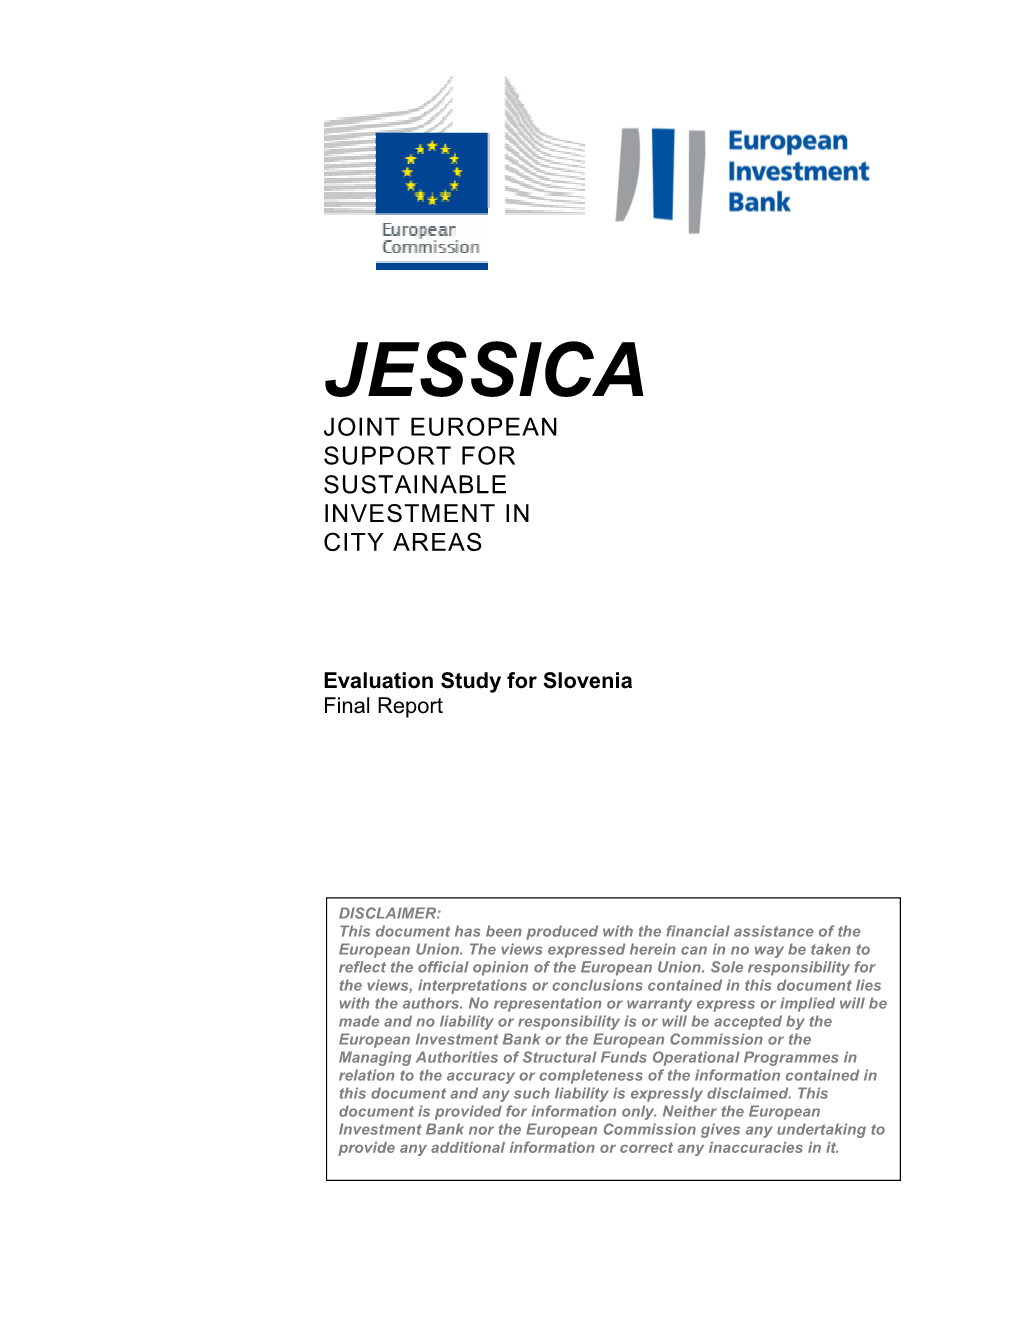 JESSICA Evaluation Study for Slovenia